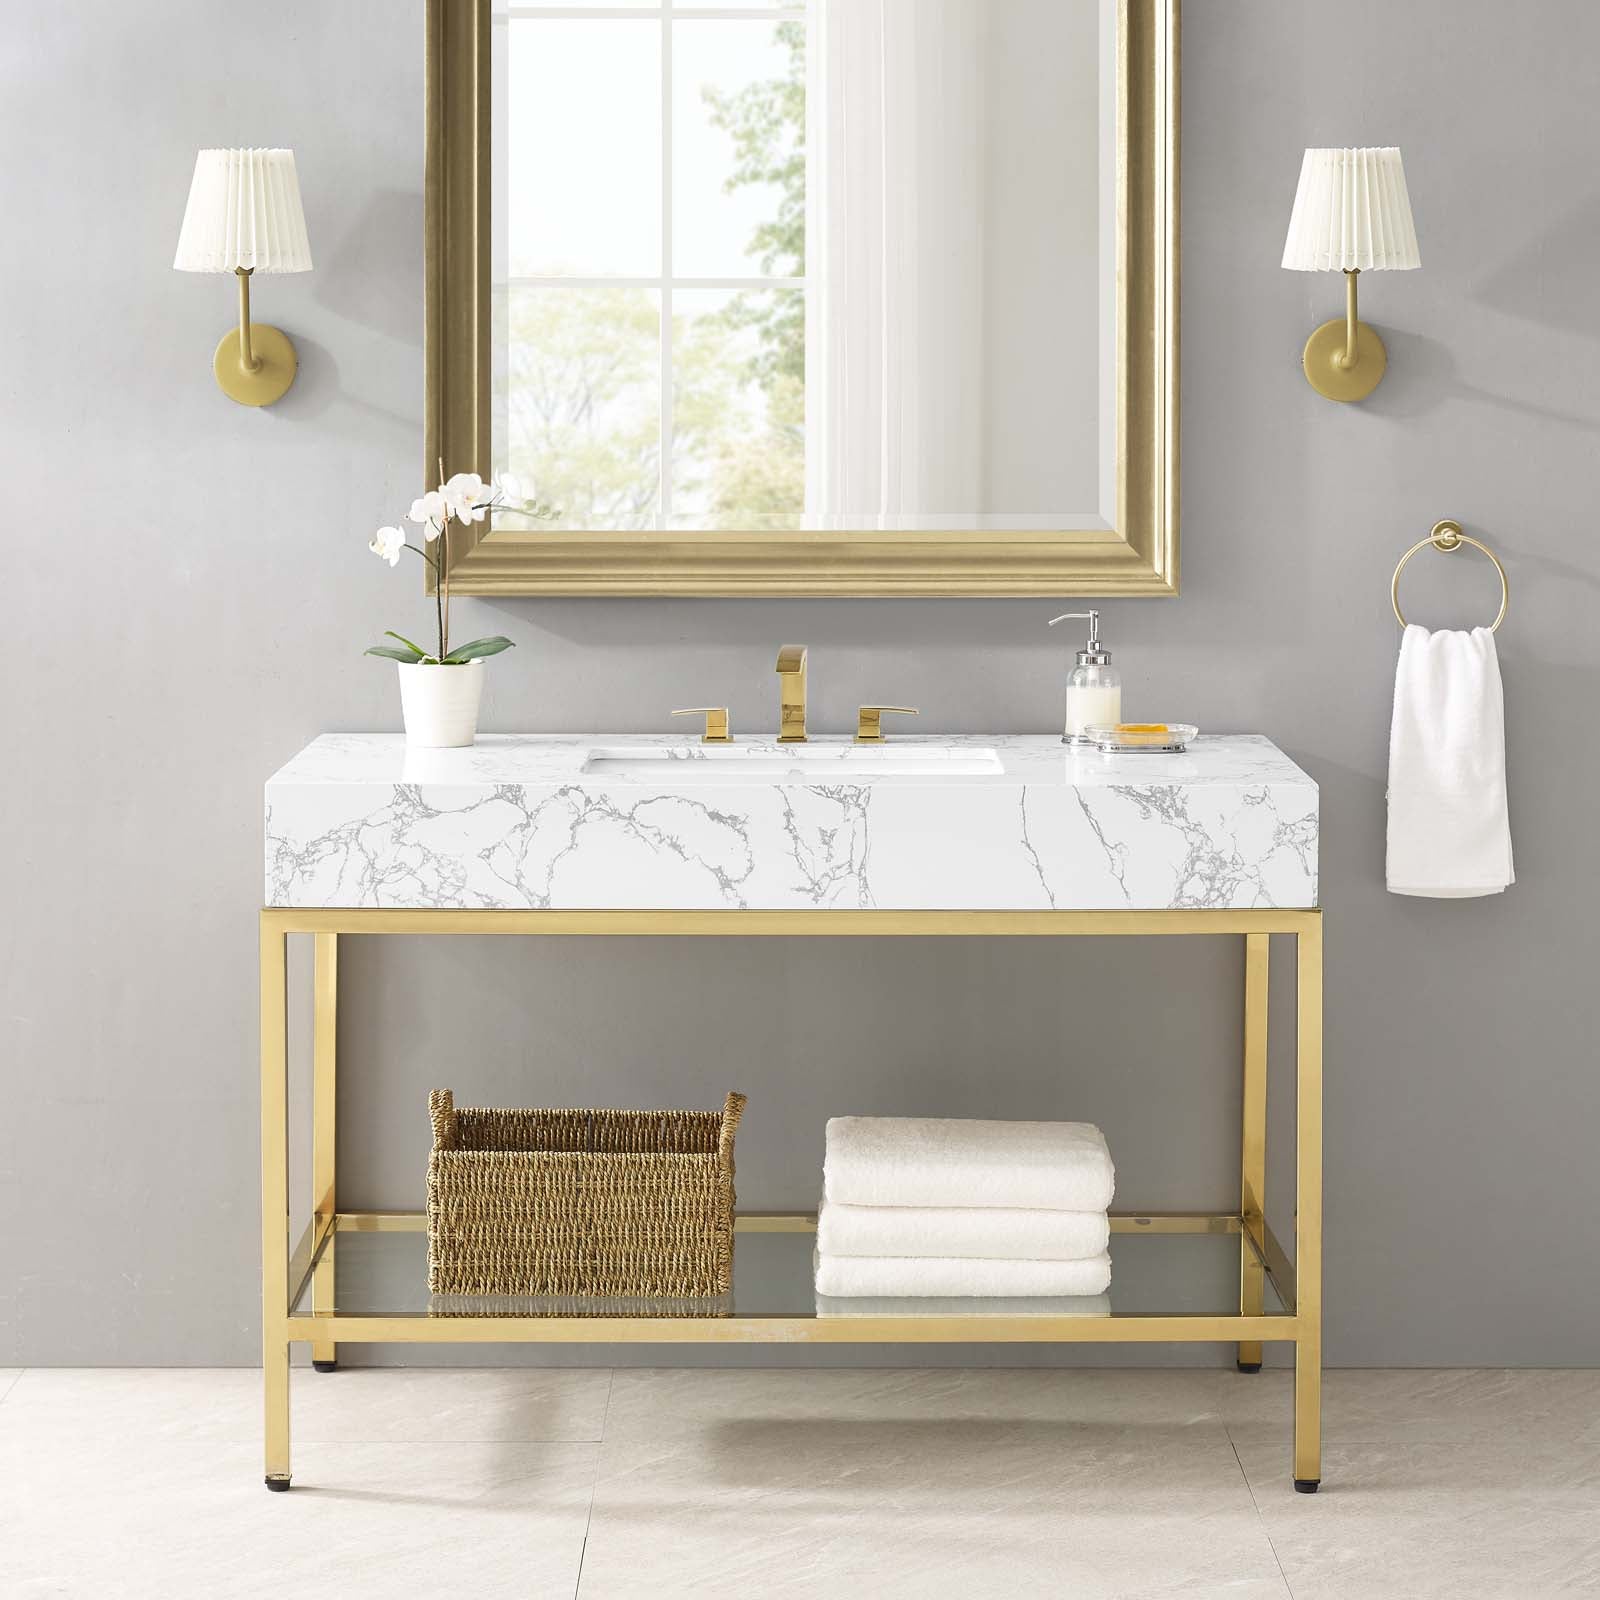 Kingsley 50" Gold Stainless Steel Bathroom Vanity - East Shore Modern Home Furnishings